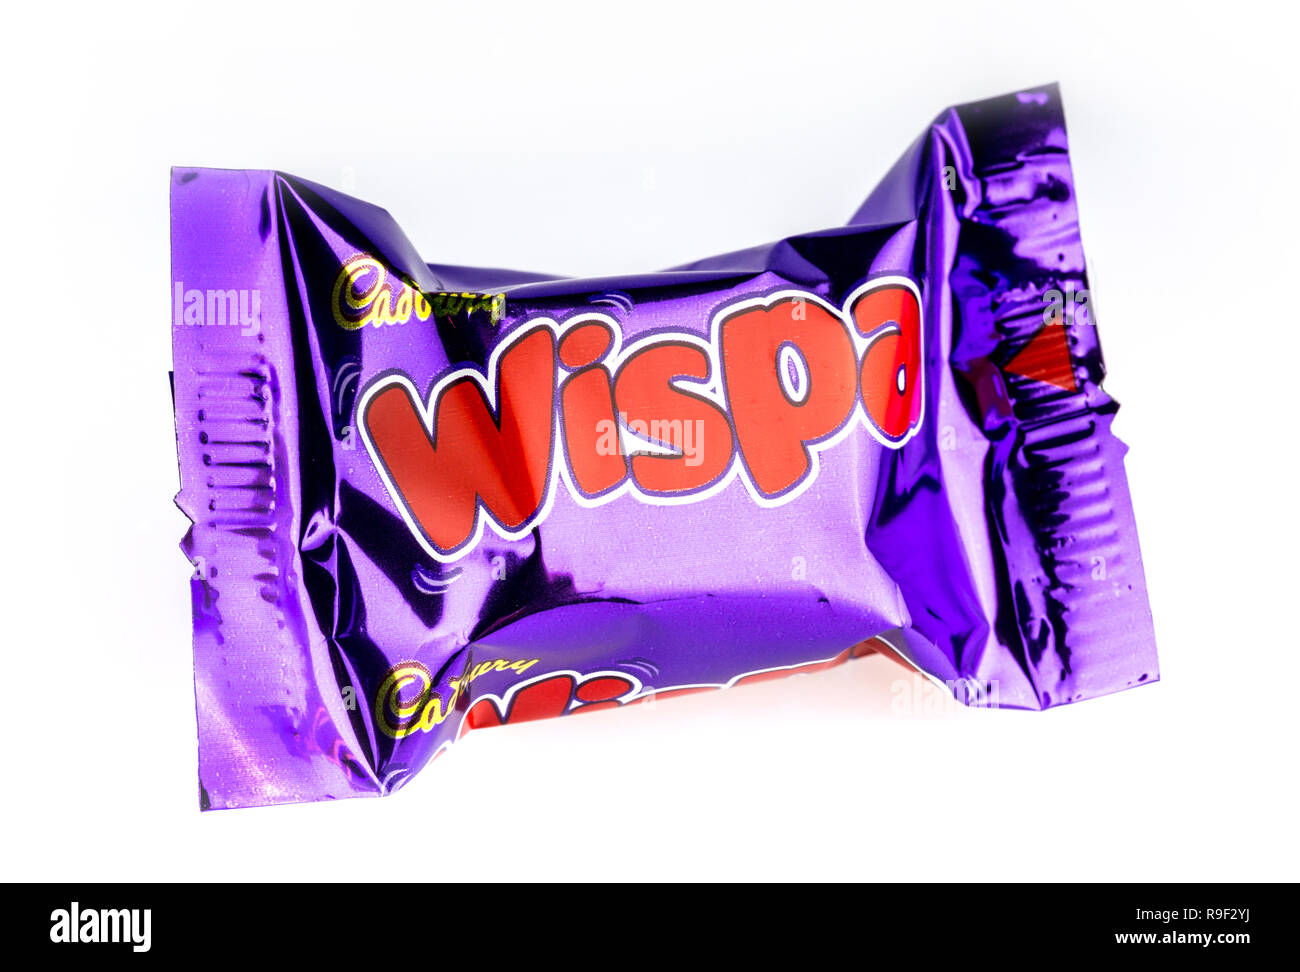 Cadburys Wispa chocolat héros sur un fond blanc Banque D'Images